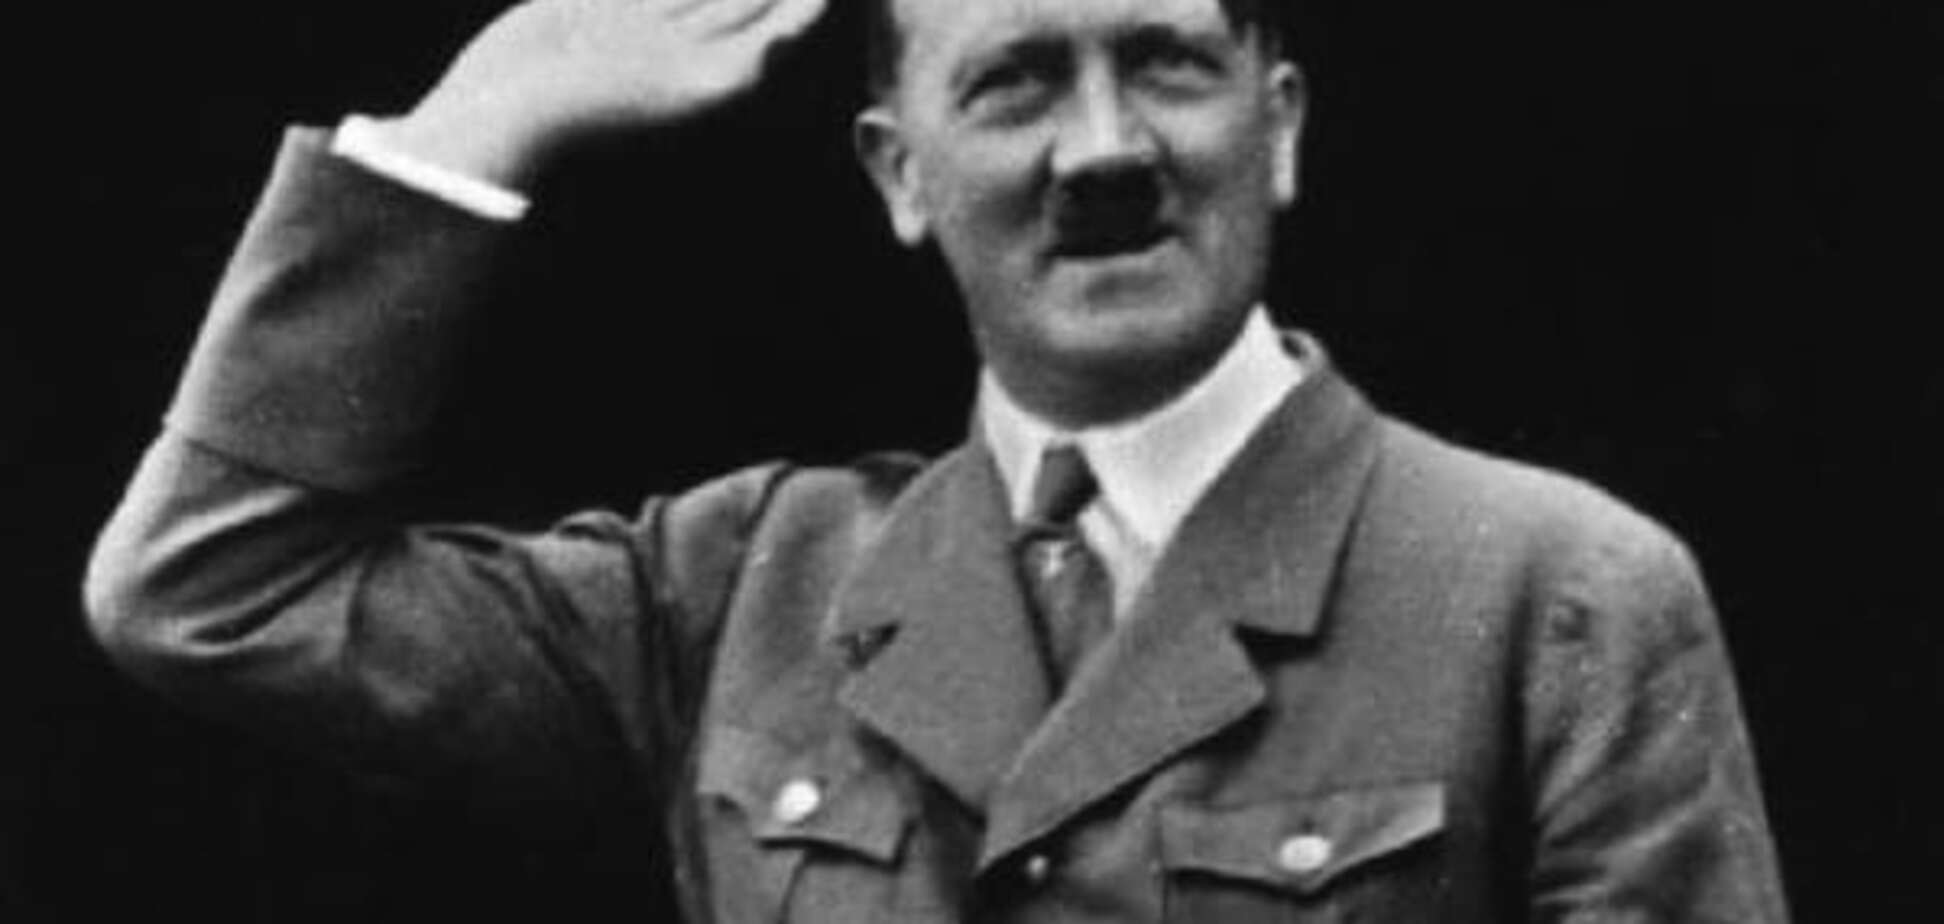 Посягнули на 'святое': в Германии с молотка ушли личные вещи Гитлера